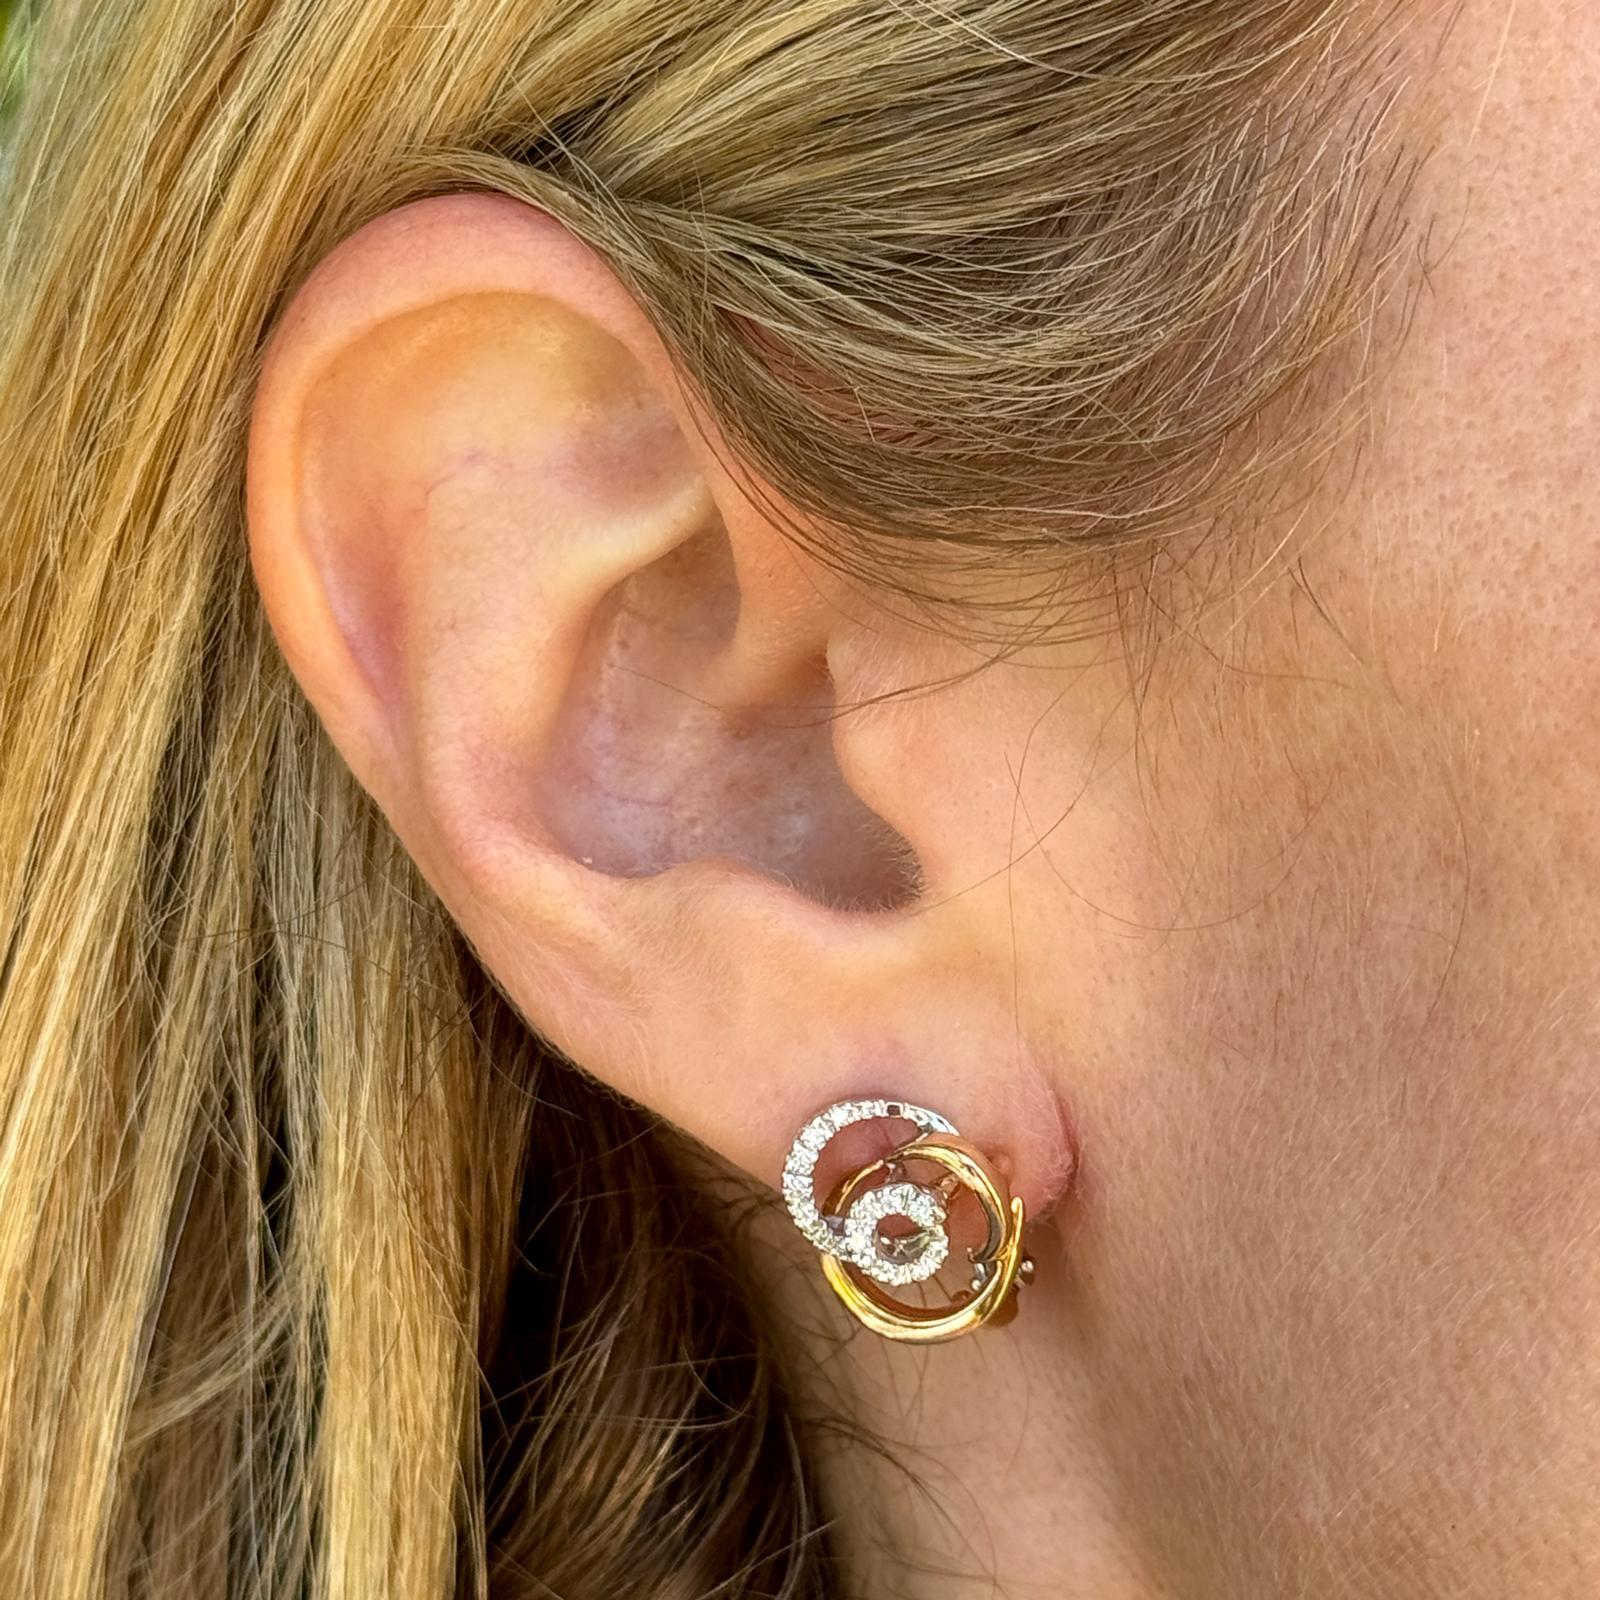 Les boucles d'oreilles circulaires Diamond Swirl en or bicolore de Damiani sont probablement une paire de boucles d'oreilles éblouissante et sophistiquée, mettant en valeur l'expertise de la marque en matière d'artisanat et de design de la haute